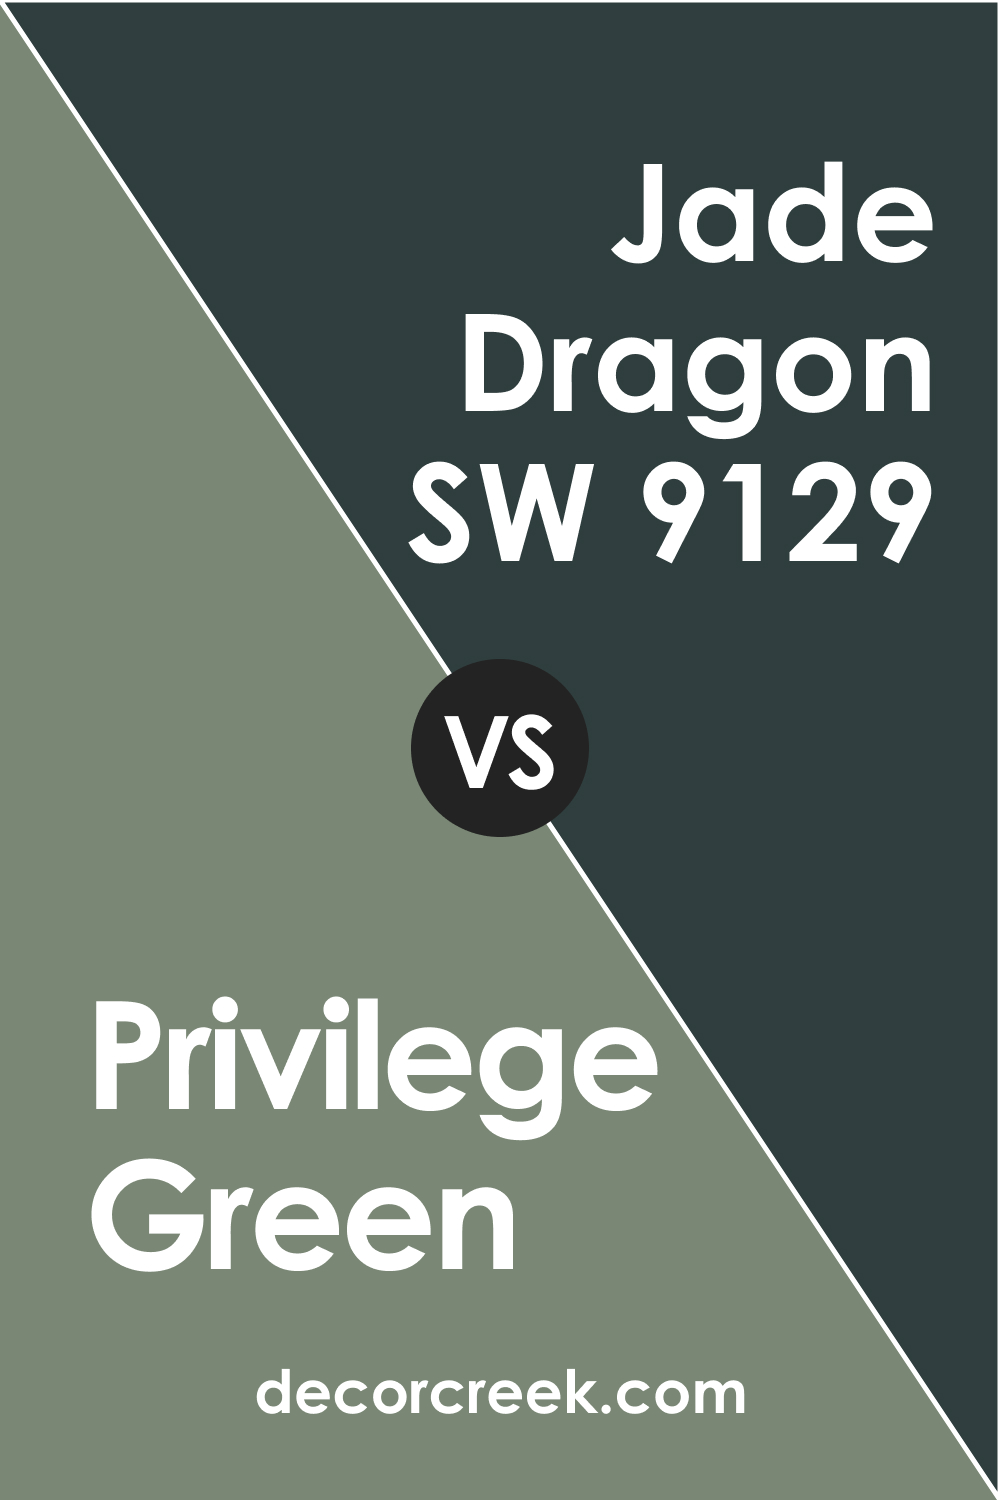 Privilege Green vs Jade Dragon